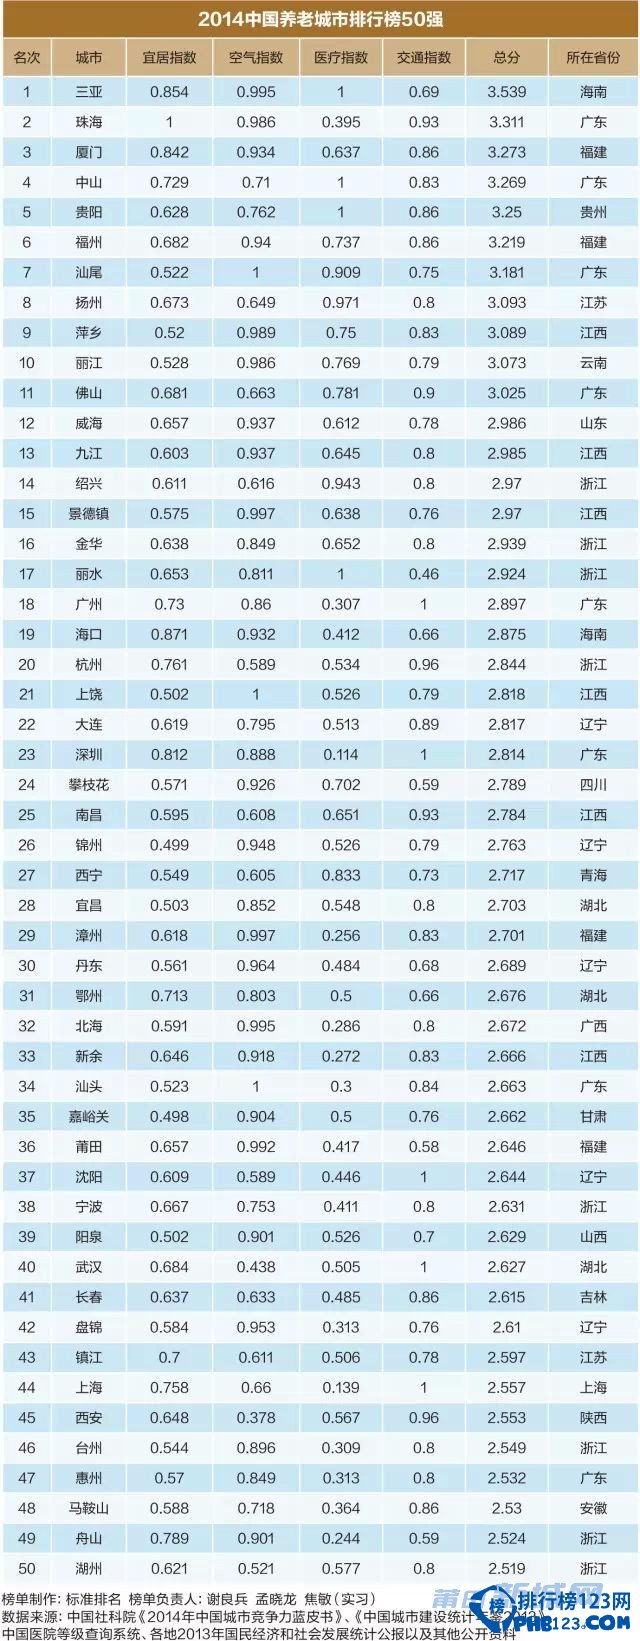 中國最適合養老的城市排名